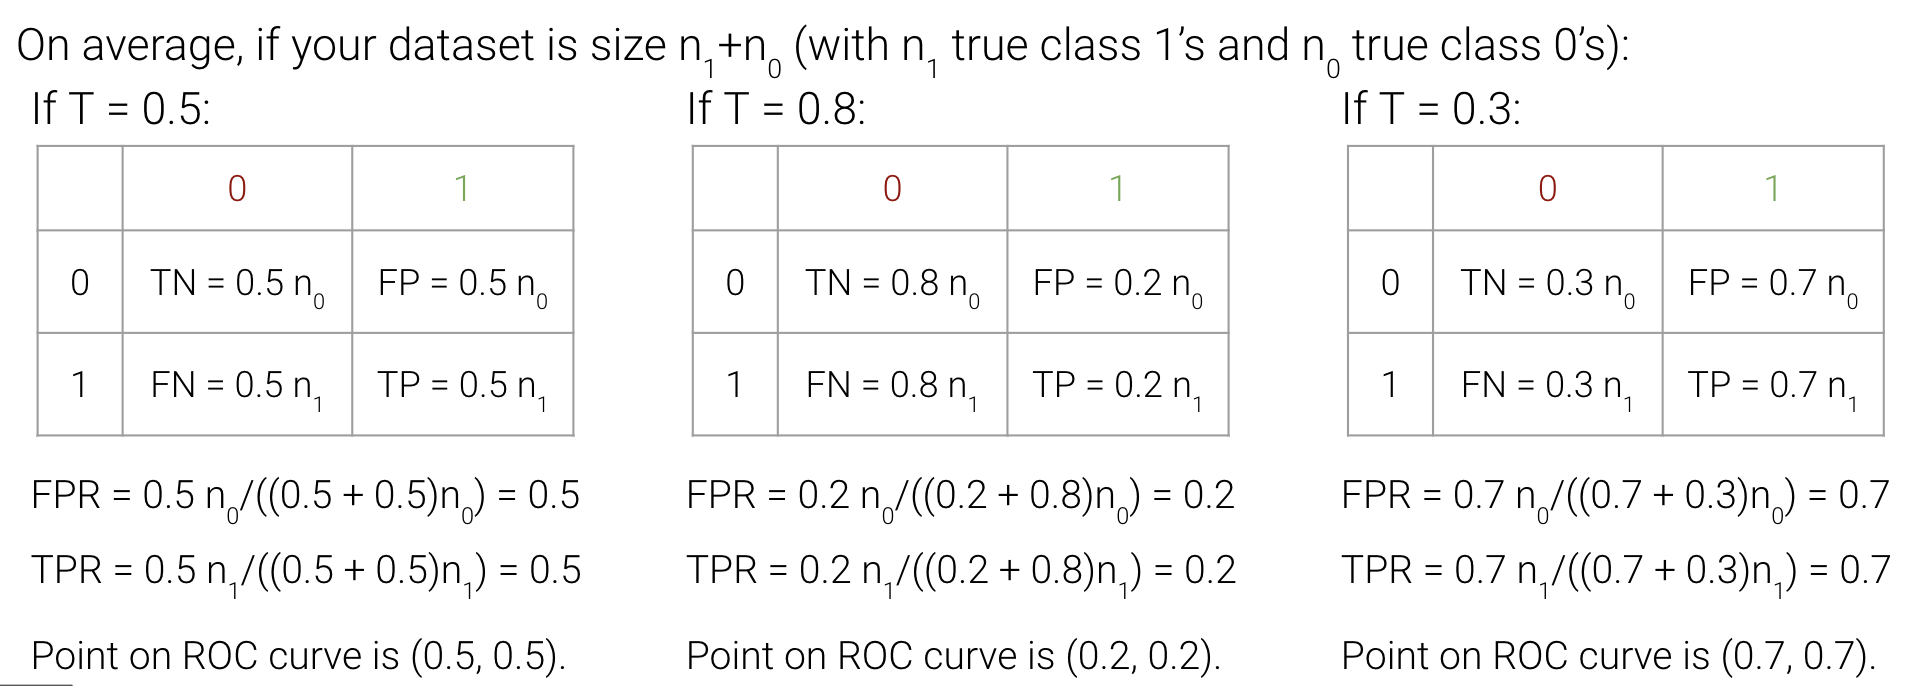 roc_curve_worse_predictor_differing_T